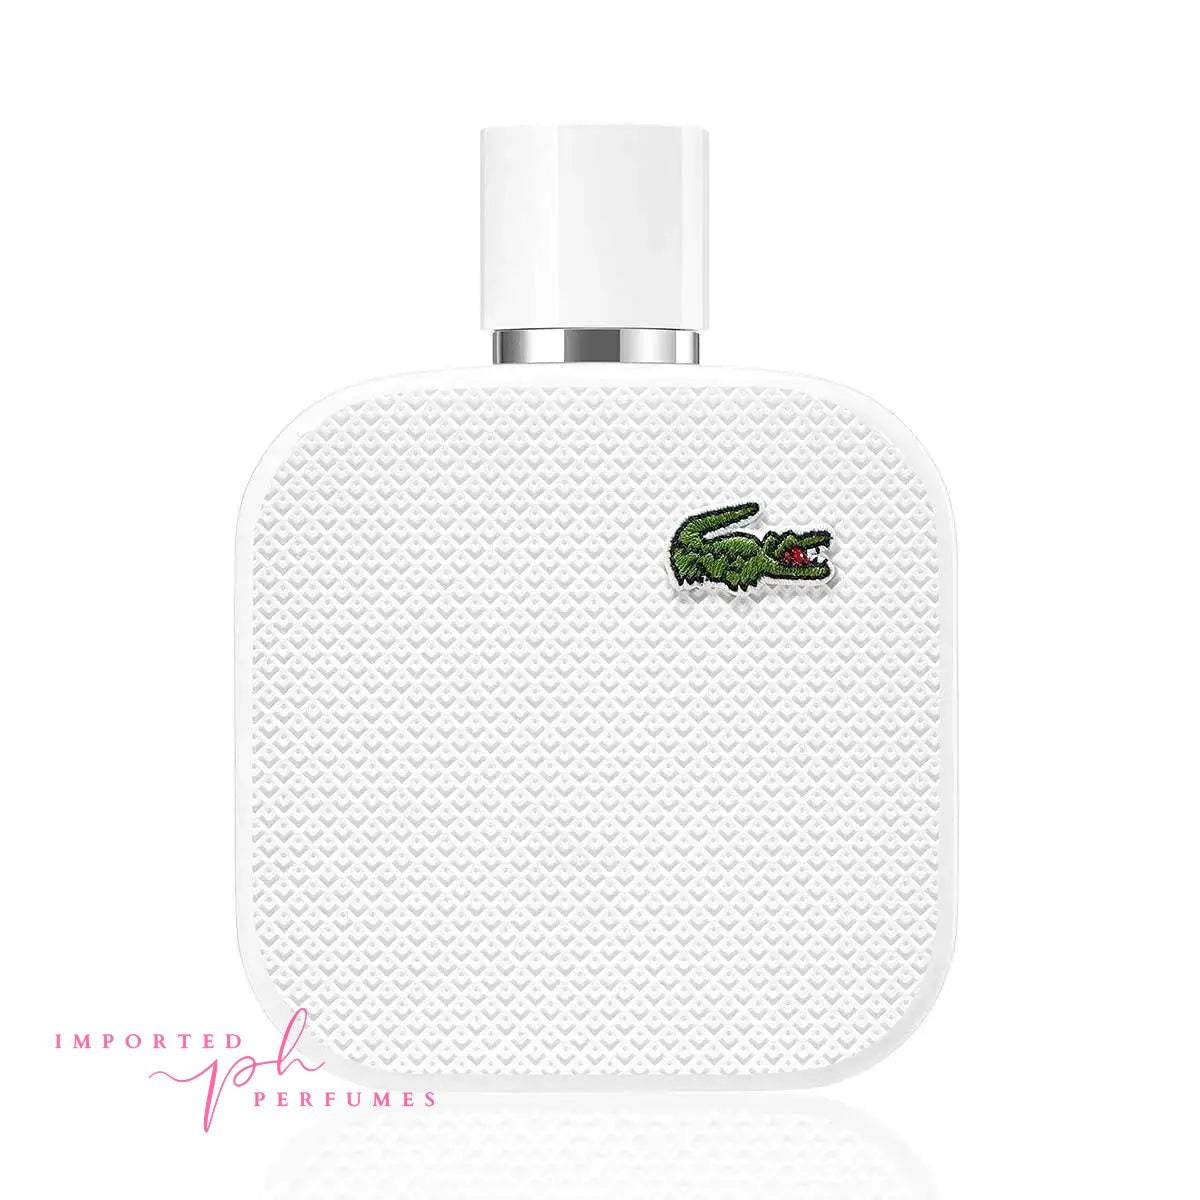 [TESTER] Lacoste L.12.12 Blanc Pour Lui Eau De Toilette 100ml-Imported Perfumes Co-100ml,Lacoste,men,test,TESTER